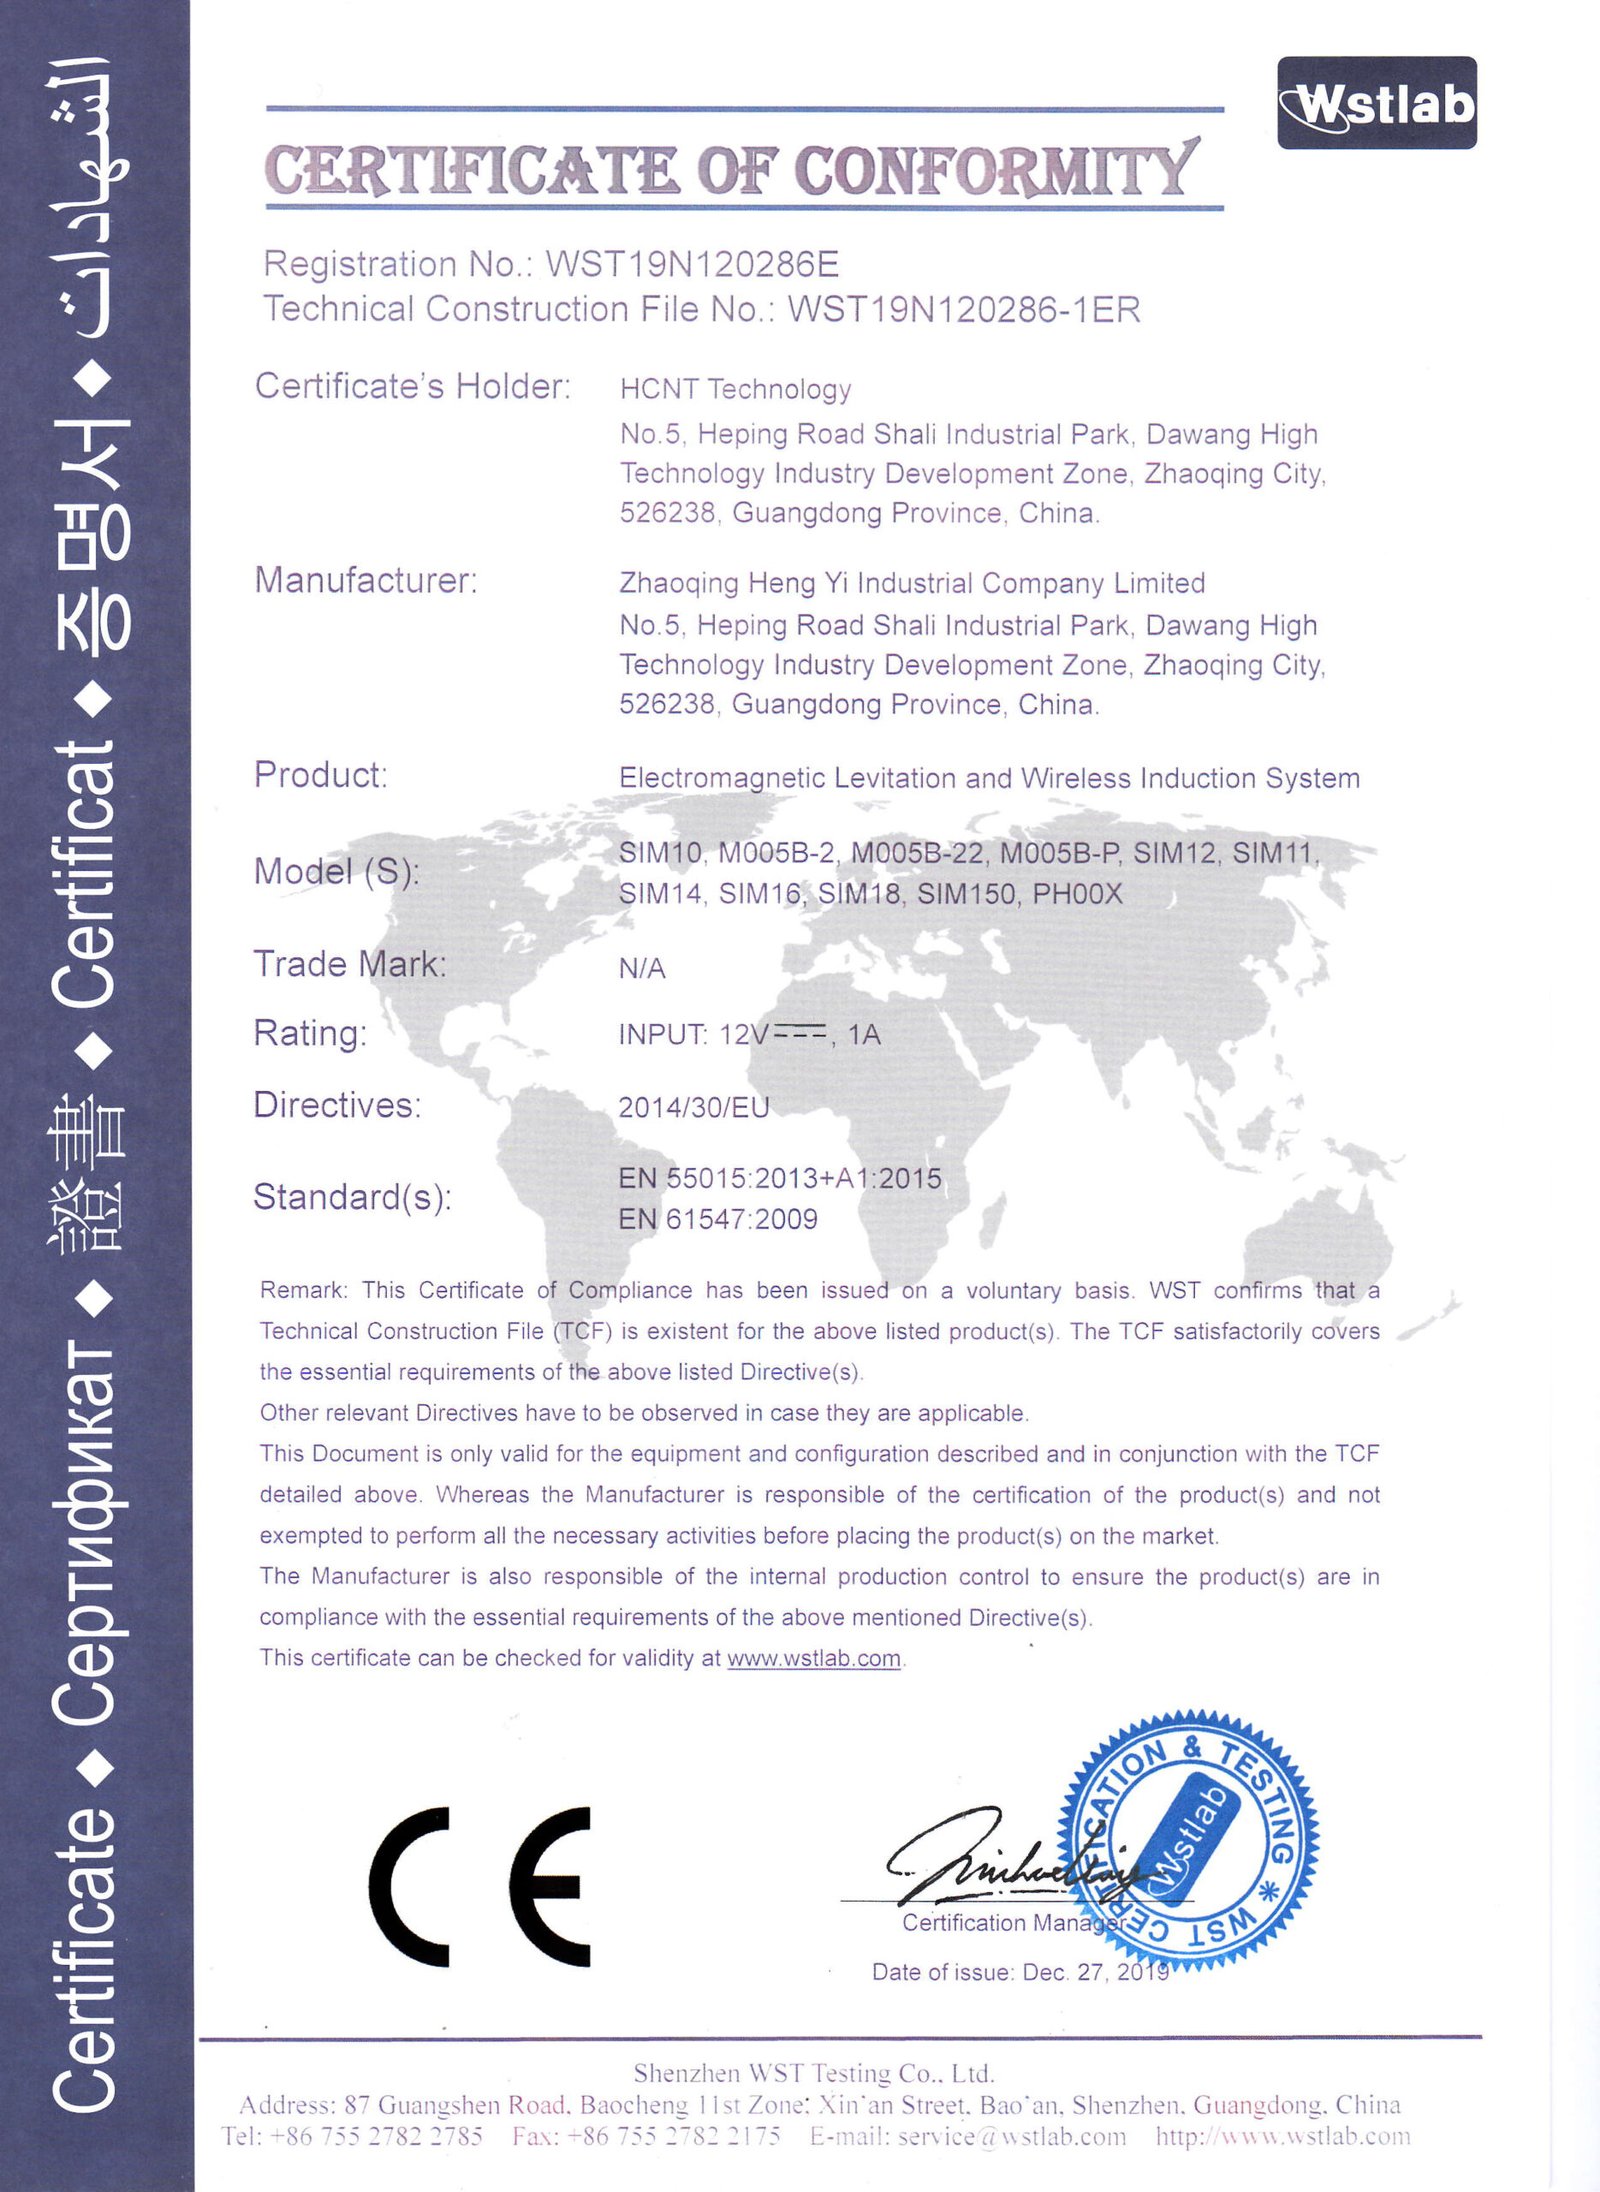 衡艺-CE-EMC-证书